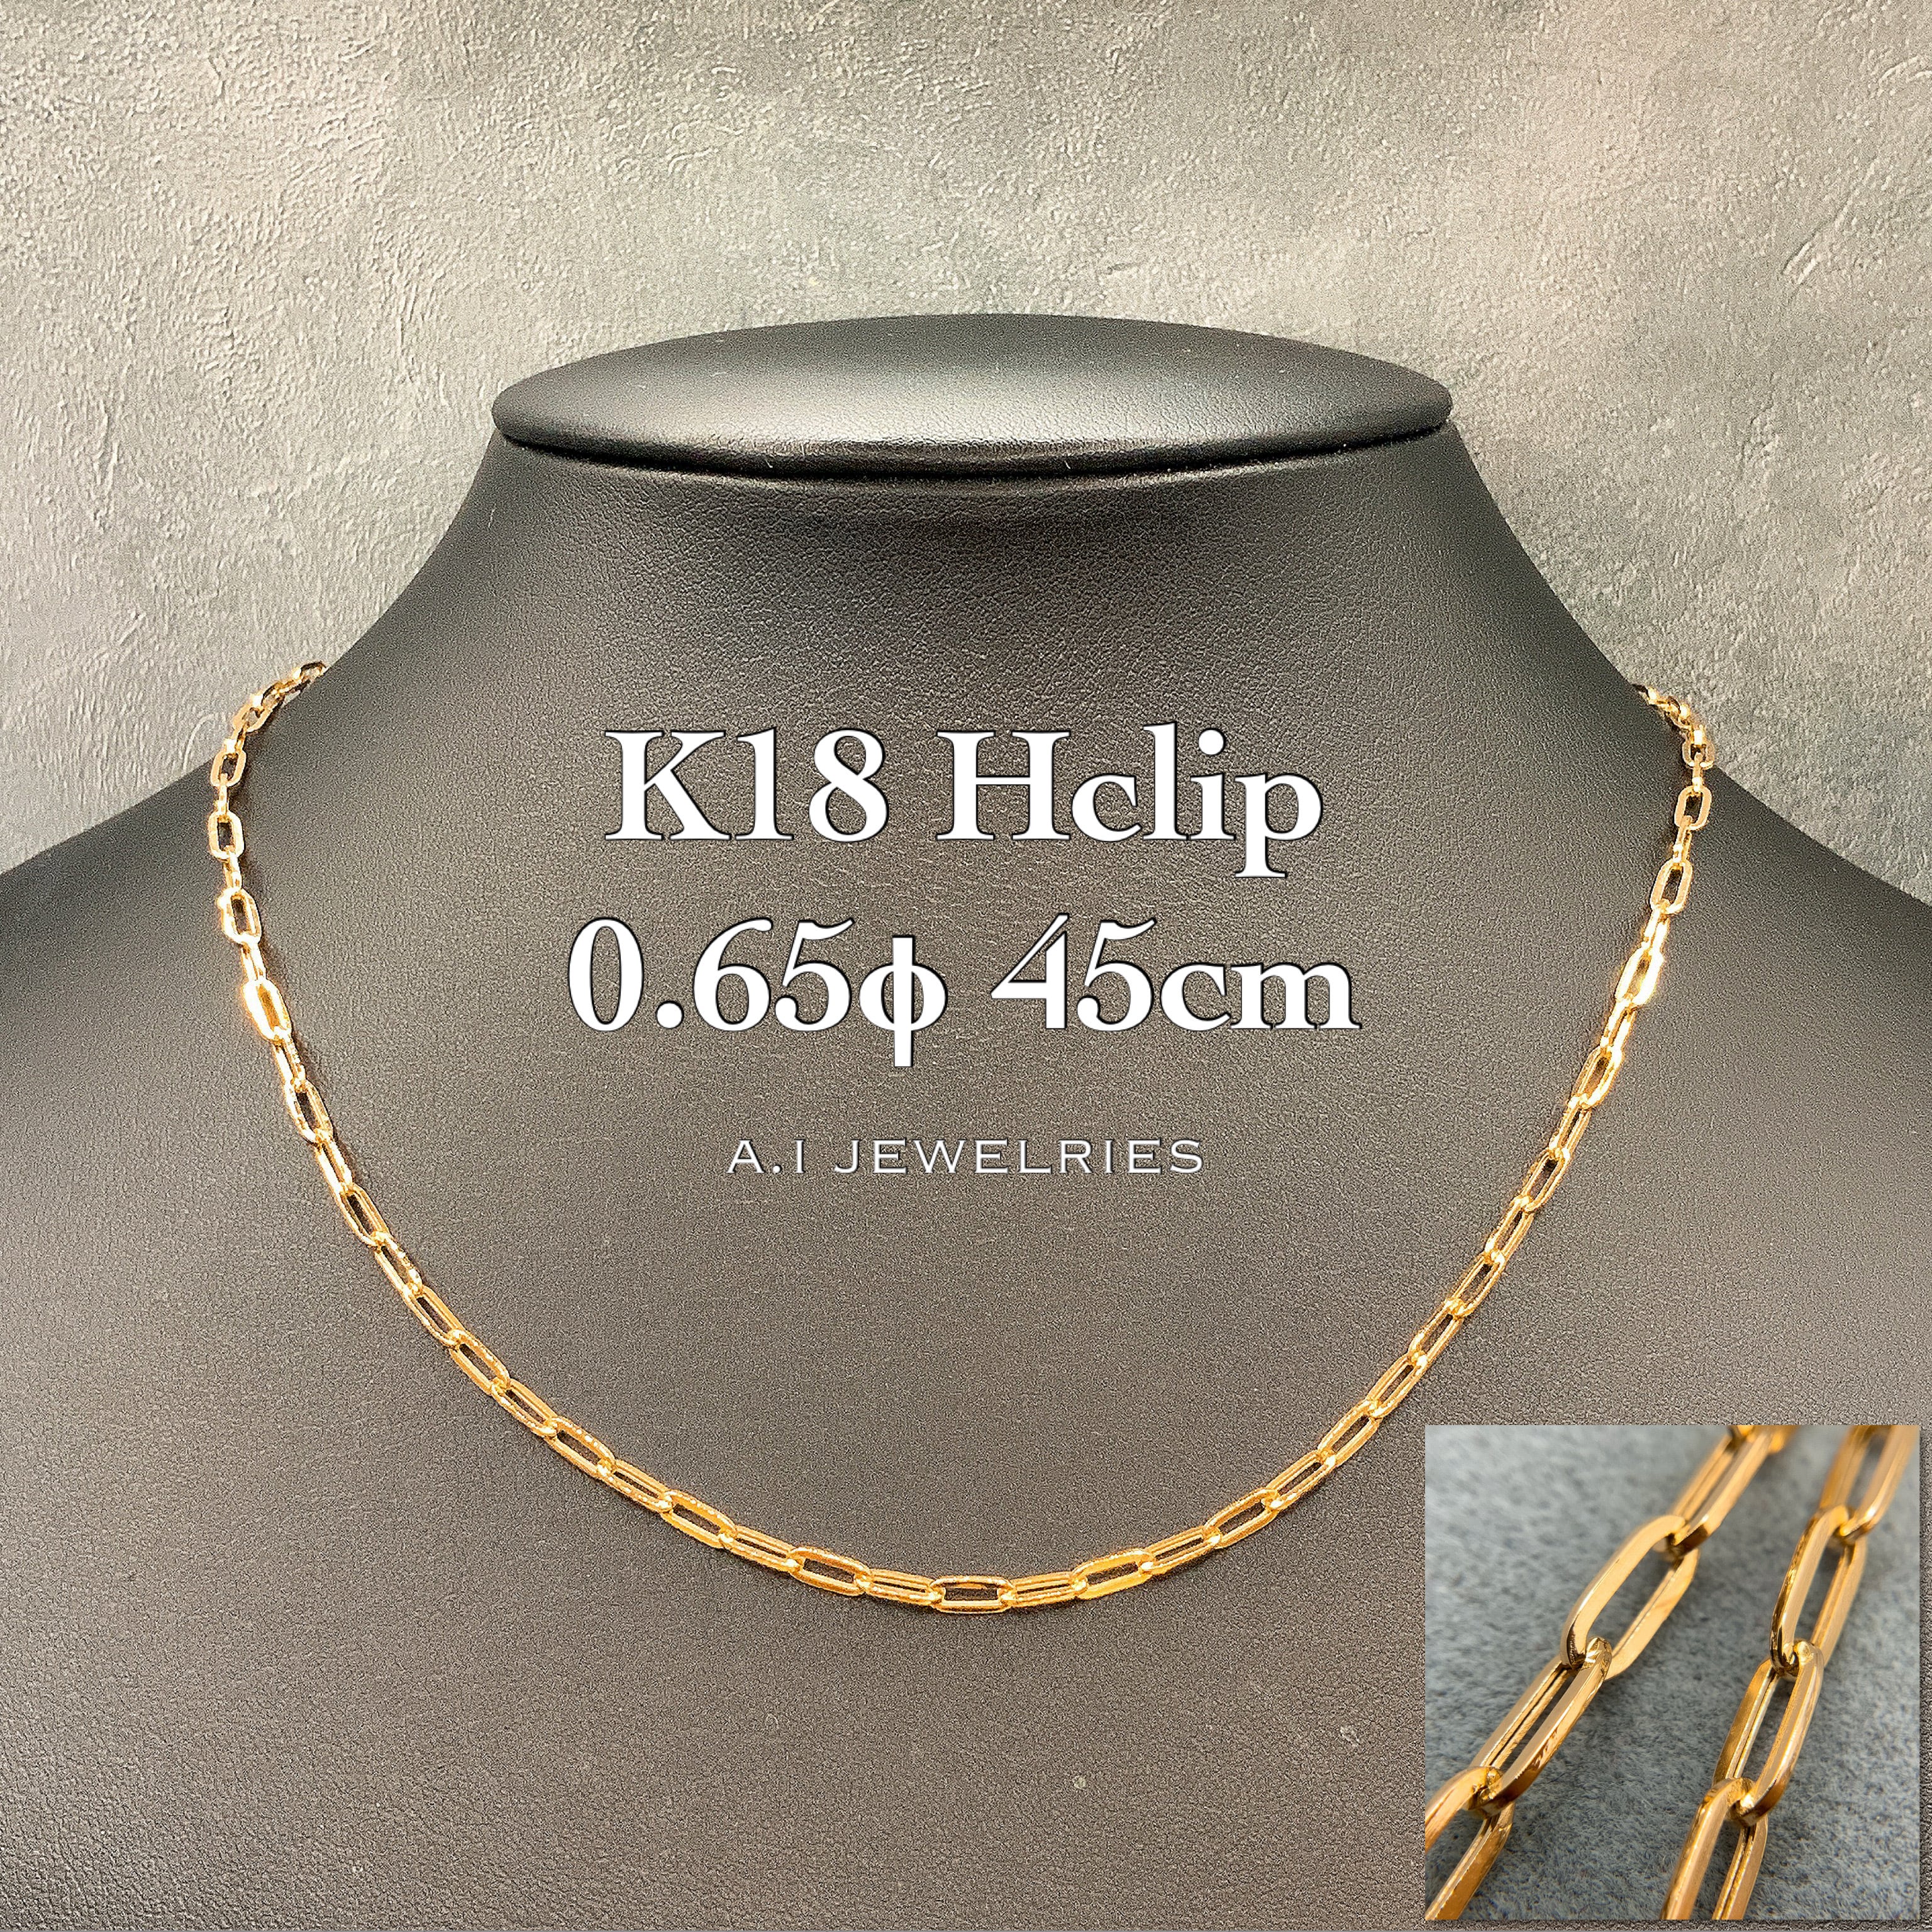 K18 18金 ペーパークリップ Hクリップ メンズ レディース ネックレス 0.65φ 45cm k18 Hclip necklace  0.65φ 45cm 品番 kpch065-45 JEWELRIES エイアイジュエリーズ